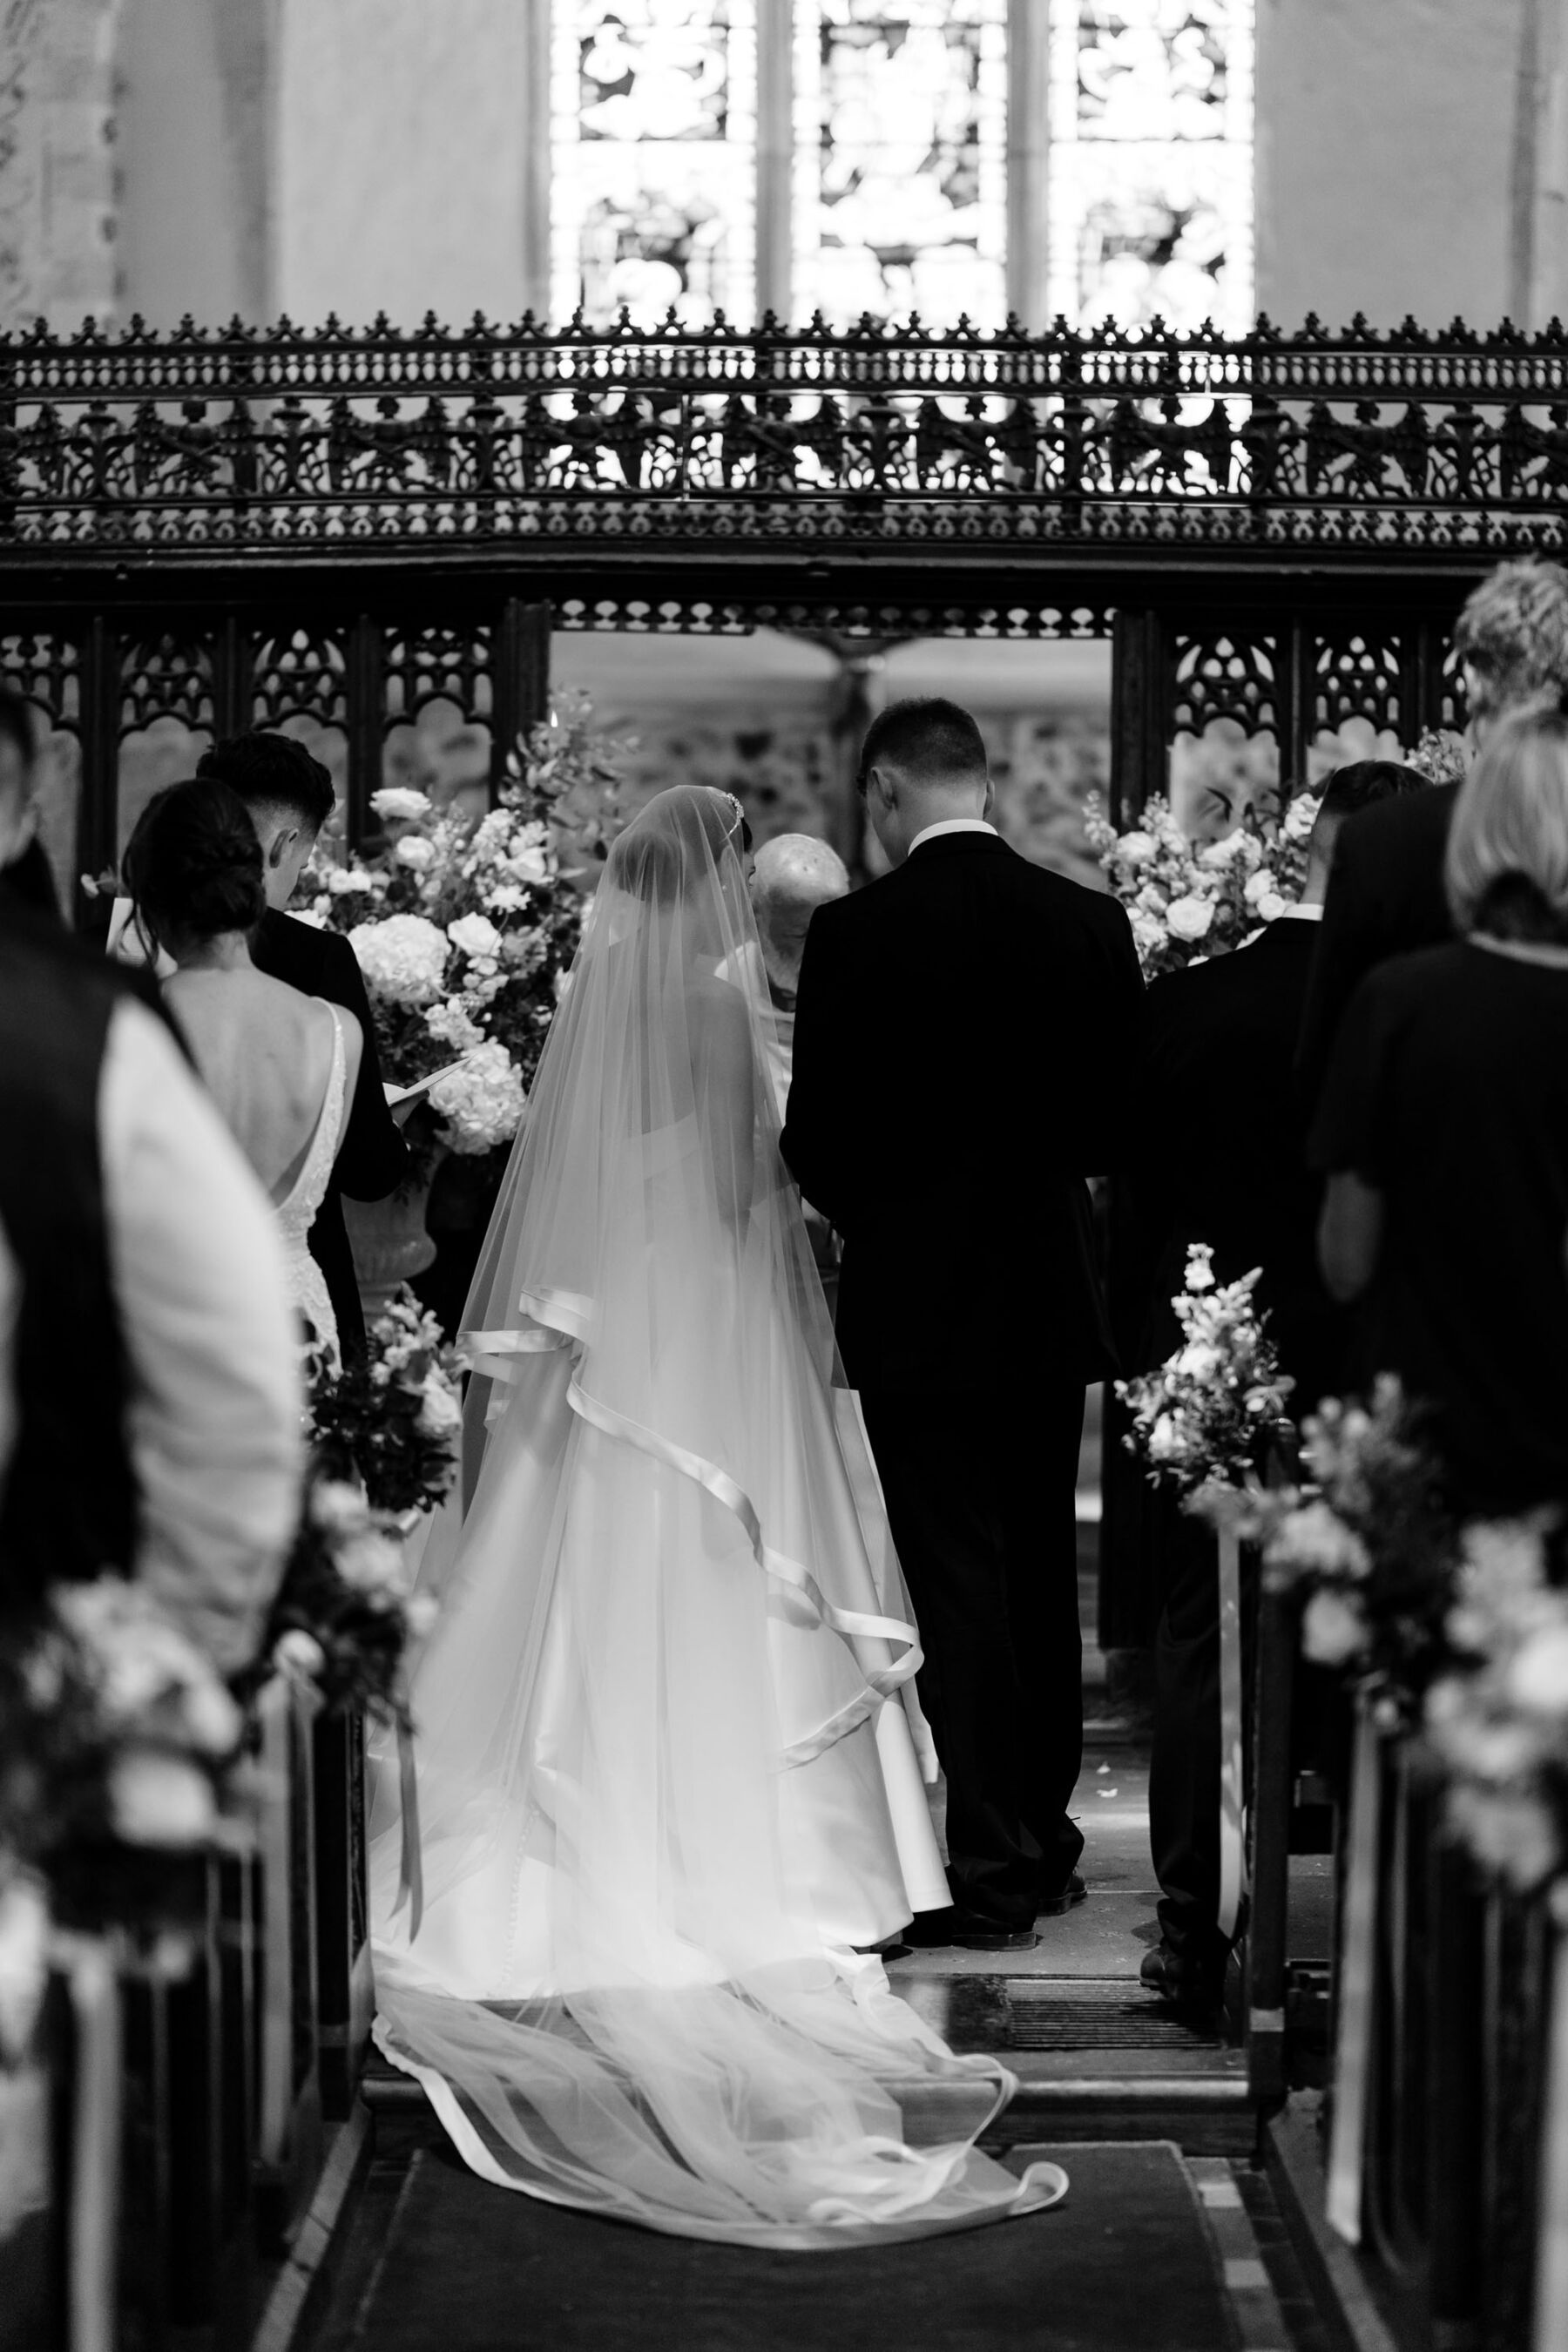 Elegant church wedding ceremony. Bride wears couture Suzanne Neville wedding dress.